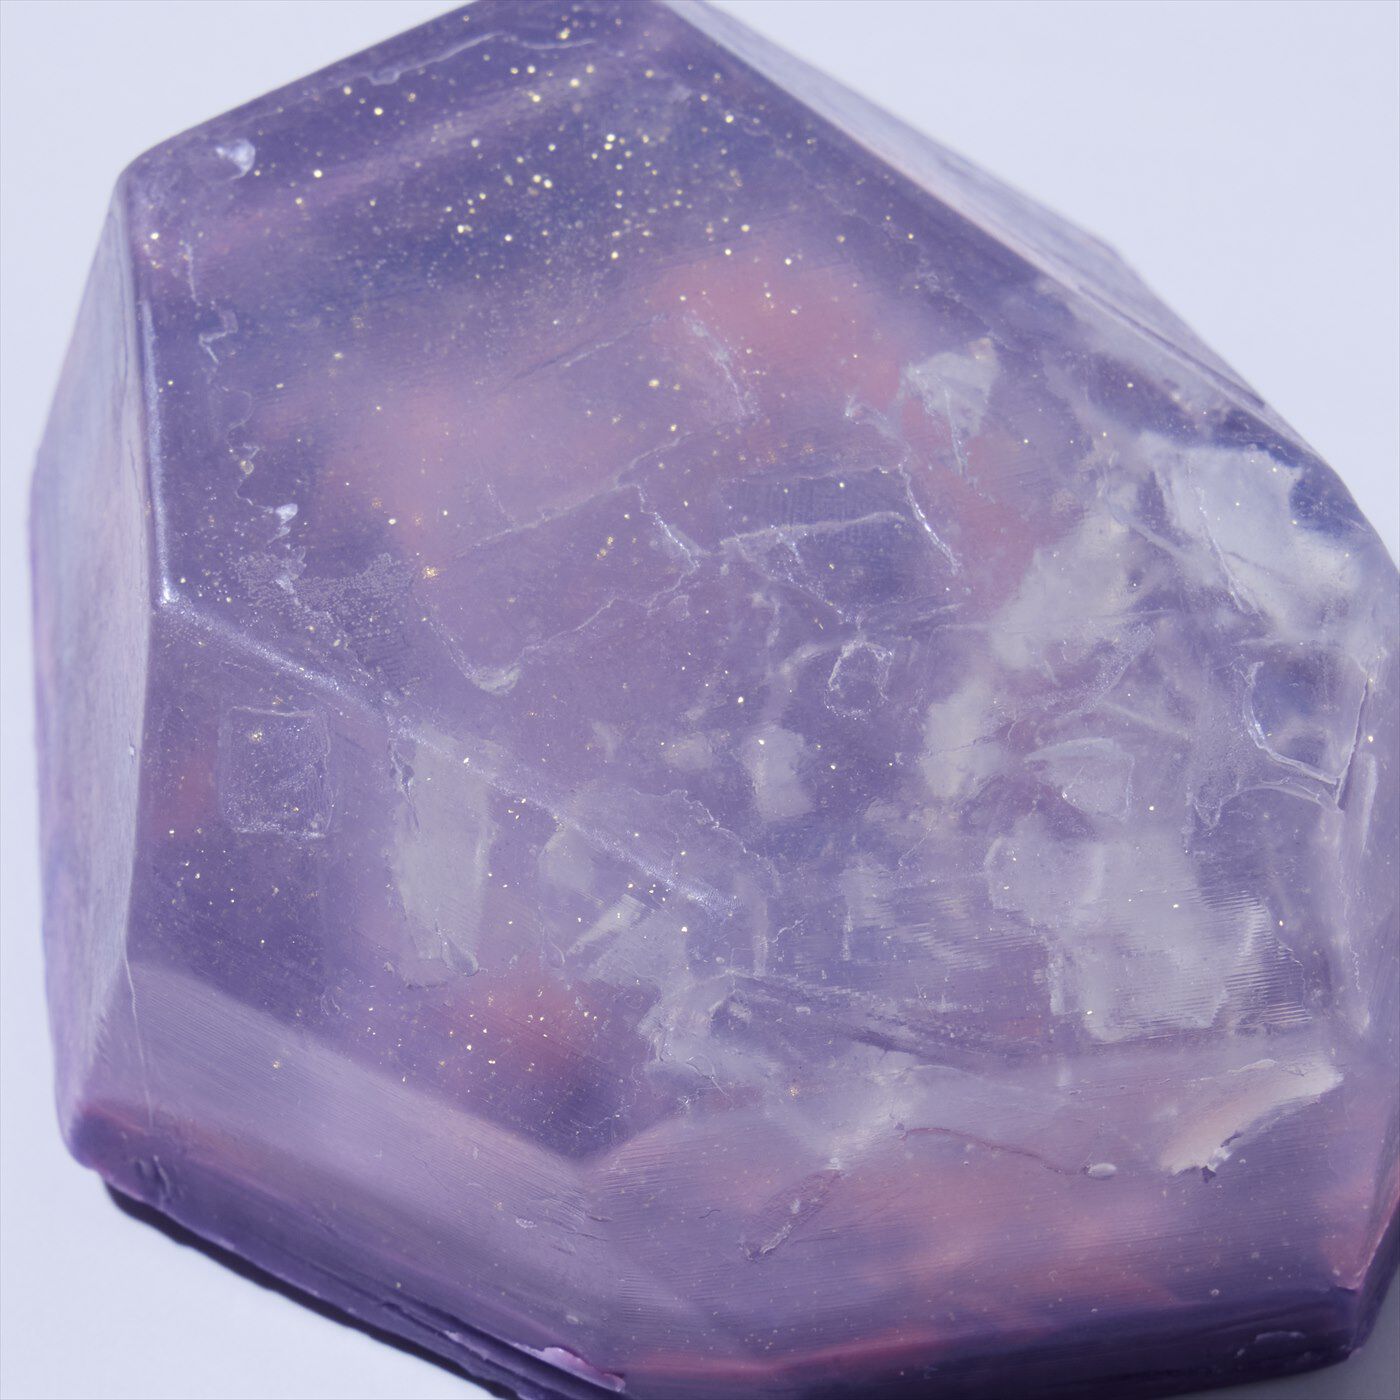 BEAUTY PROJECT|宝石の原石のような輝き　シュフレサボンの会|深い紫と、透明度の高い部分を層にしたアメジストを表現。よく見ると絶妙なきらめきも再現されています。